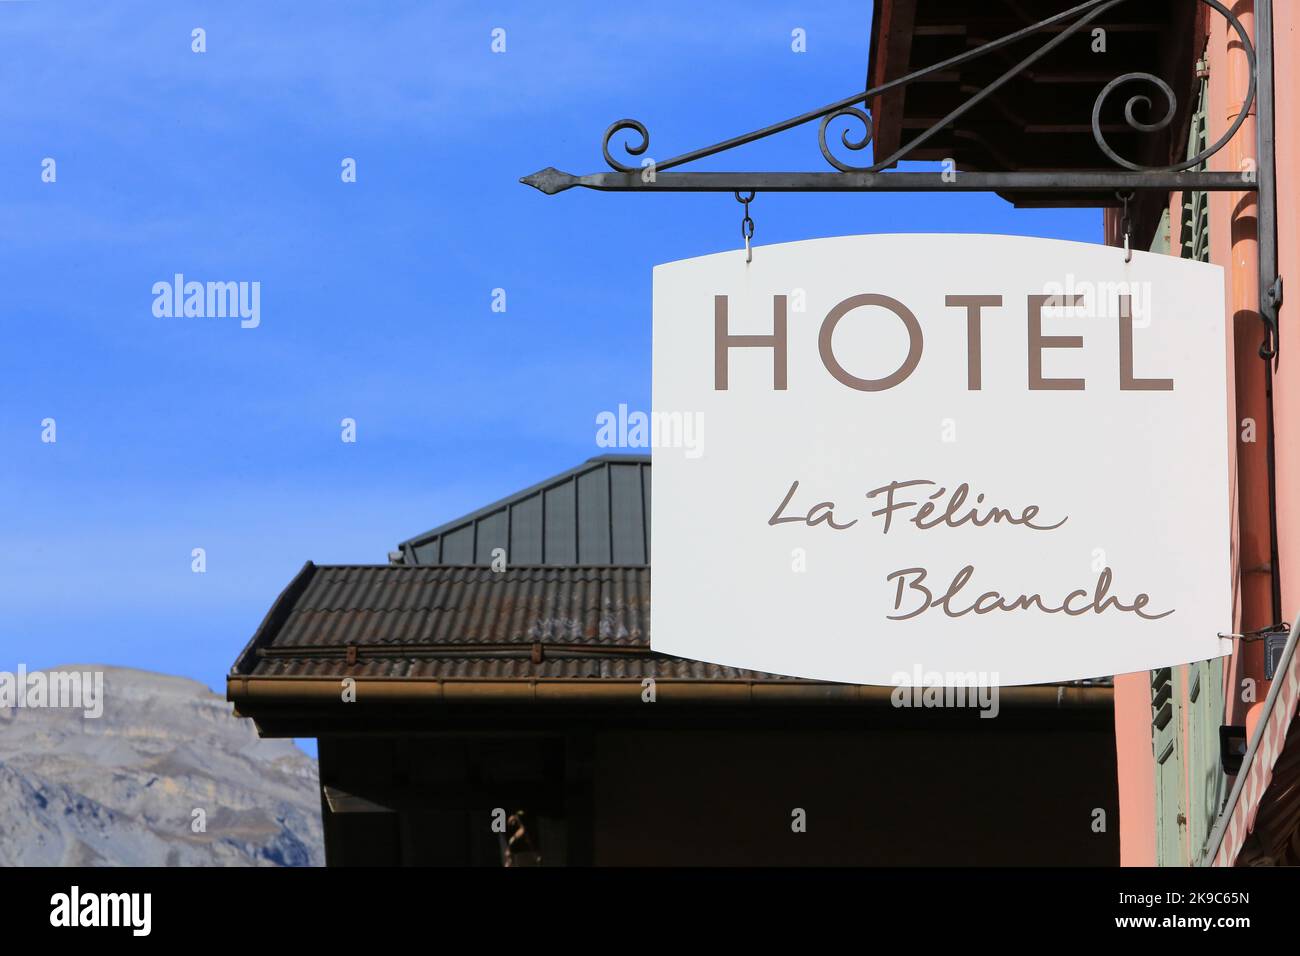 Hôtel La Féline Blanche. Saint-Gervais-les-Bains. Haute-Savoie. Auvergne-Rhône-Alpes. France. Europe. Stock Photo